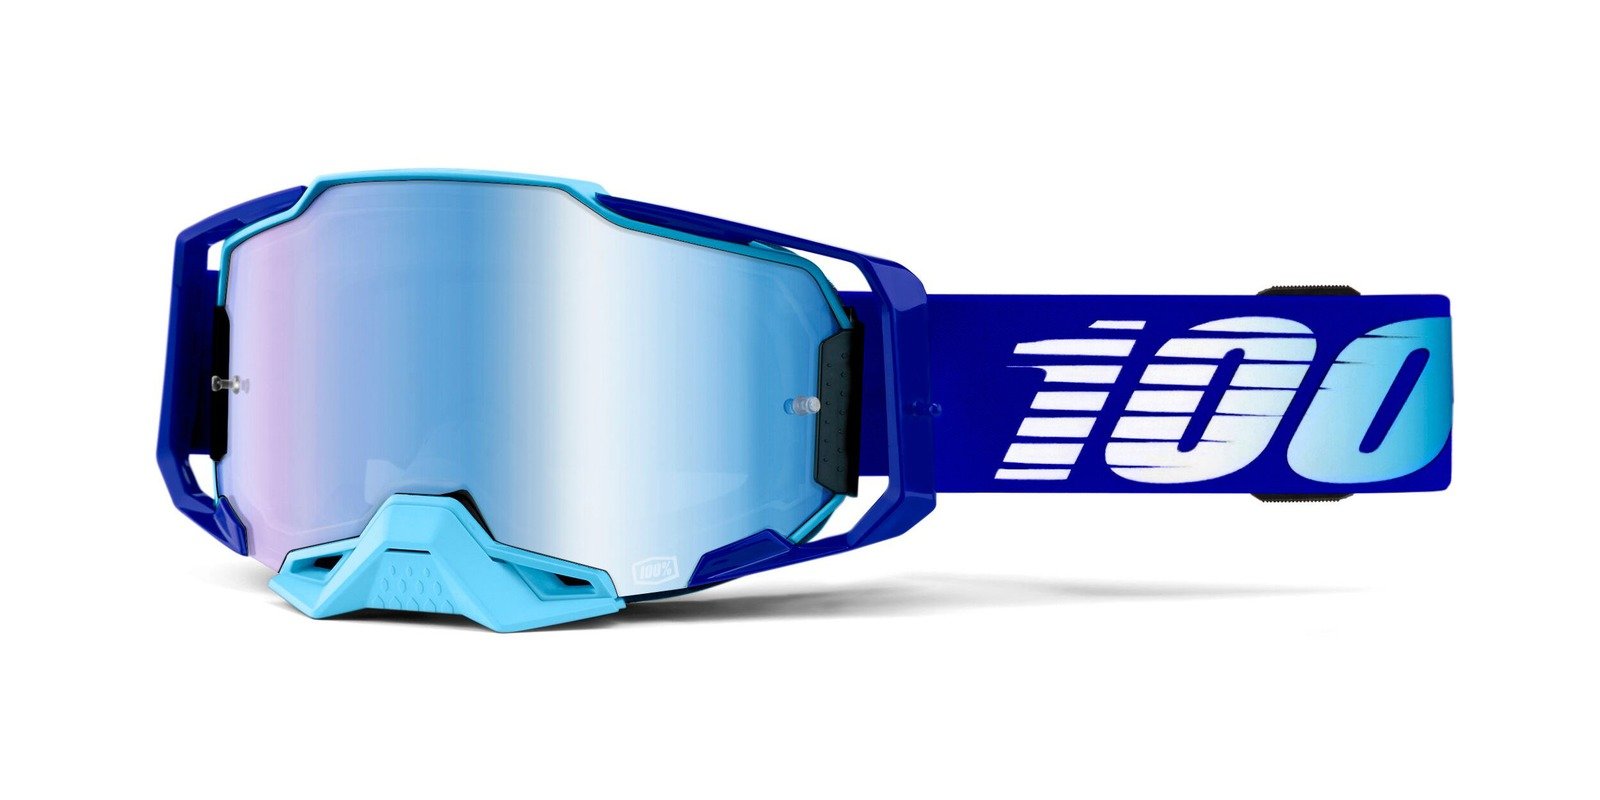 Obrázek produktu brýle ARMEGA Royal, 100% (modré chromované plexi s čepy pro slídy) 50710-360-02